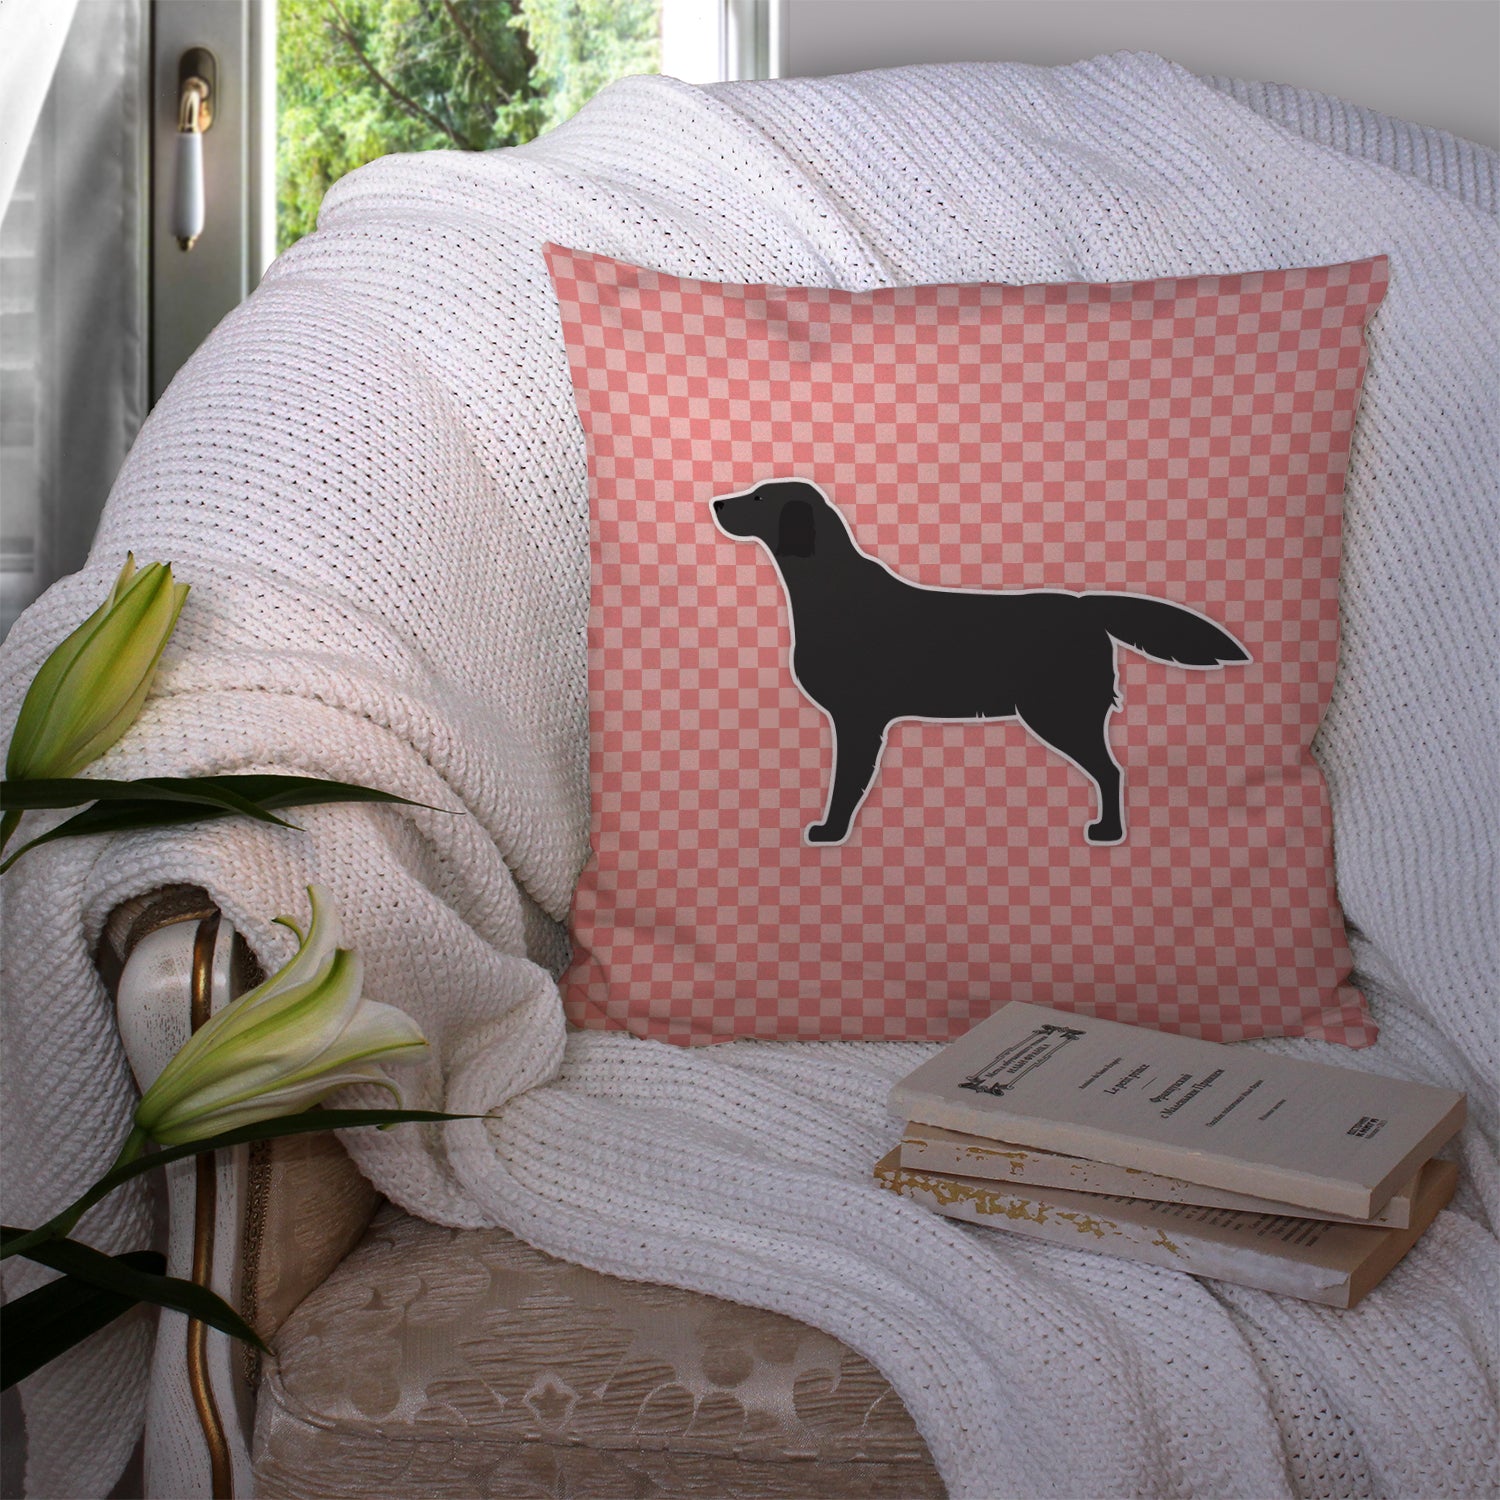 Black Labrador Retriever Checkerboard Pink Fabric Decorative Pillow BB3608PW1414 - the-store.com